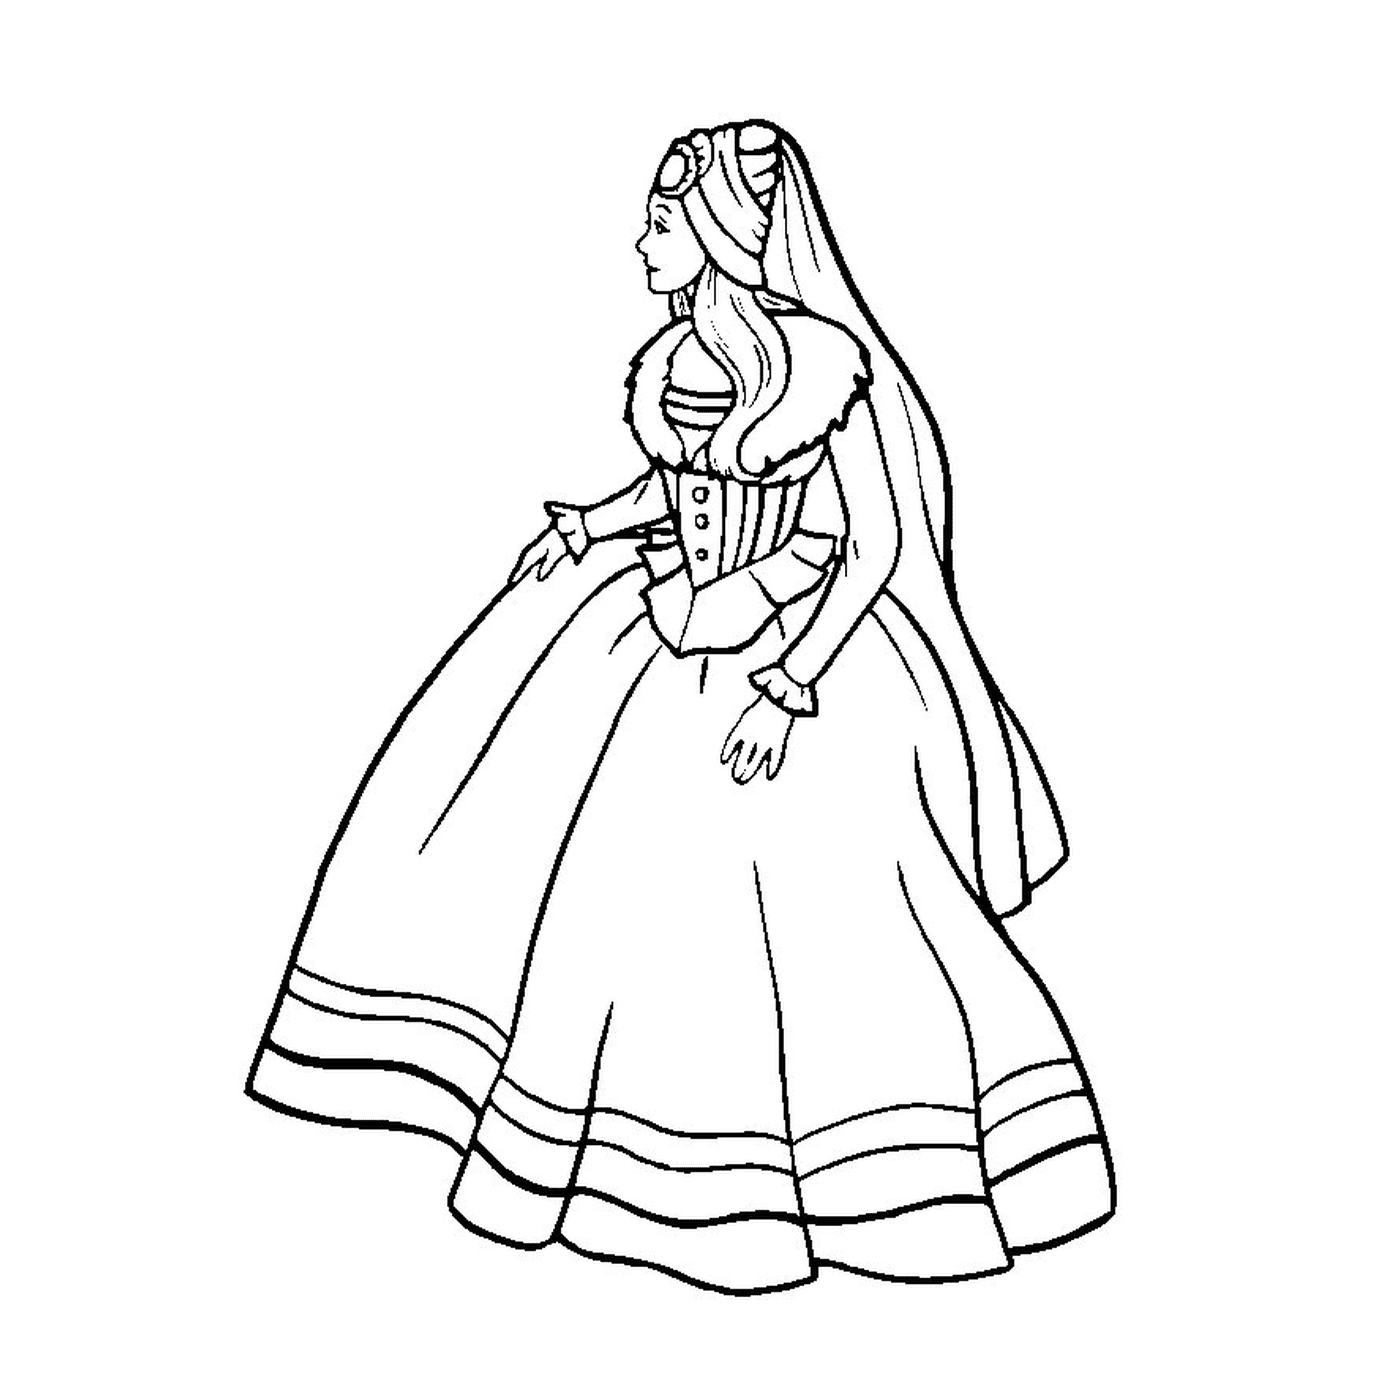  芭比公主的心 和一个穿着裙子的女人 